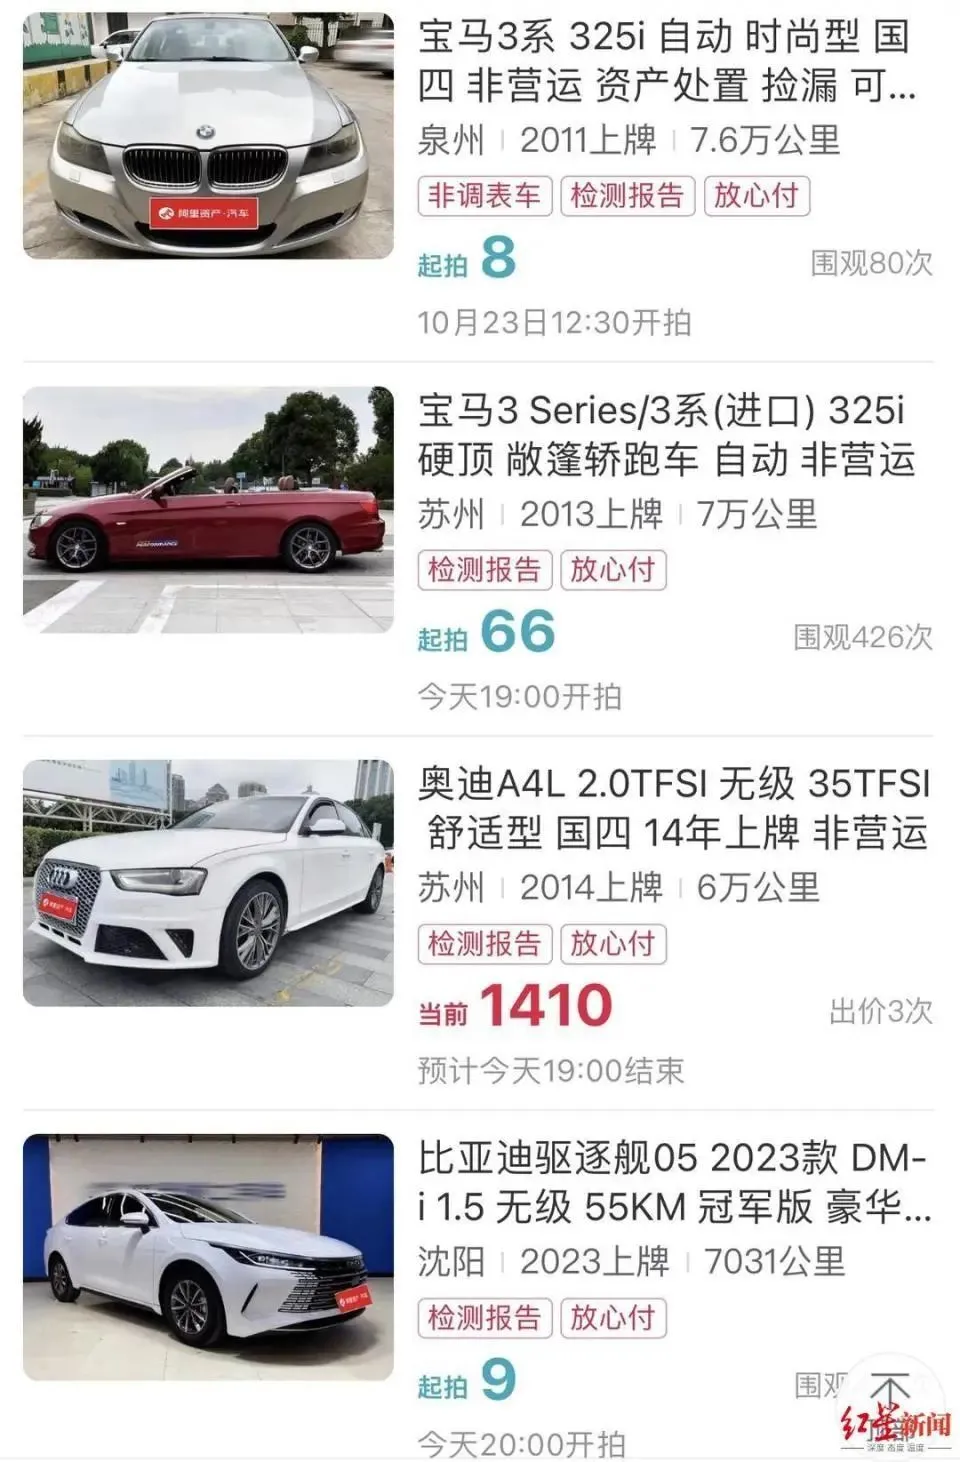 武汉鑫车公司拍卖页面中，仍有低起拍价竞拍车辆